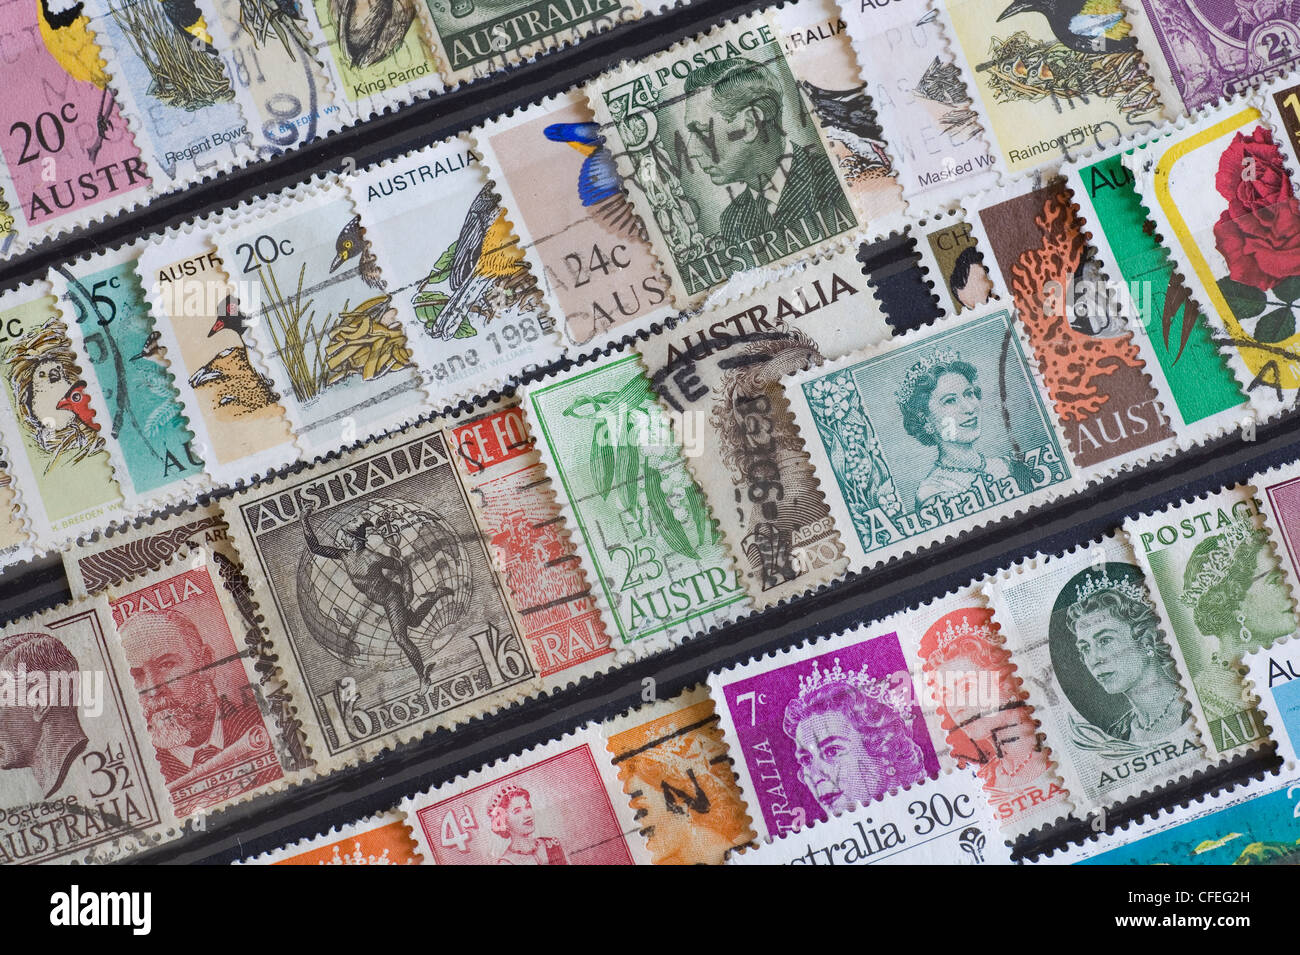 Les timbres australiens dans une collection d'albums de timbres Banque D'Images